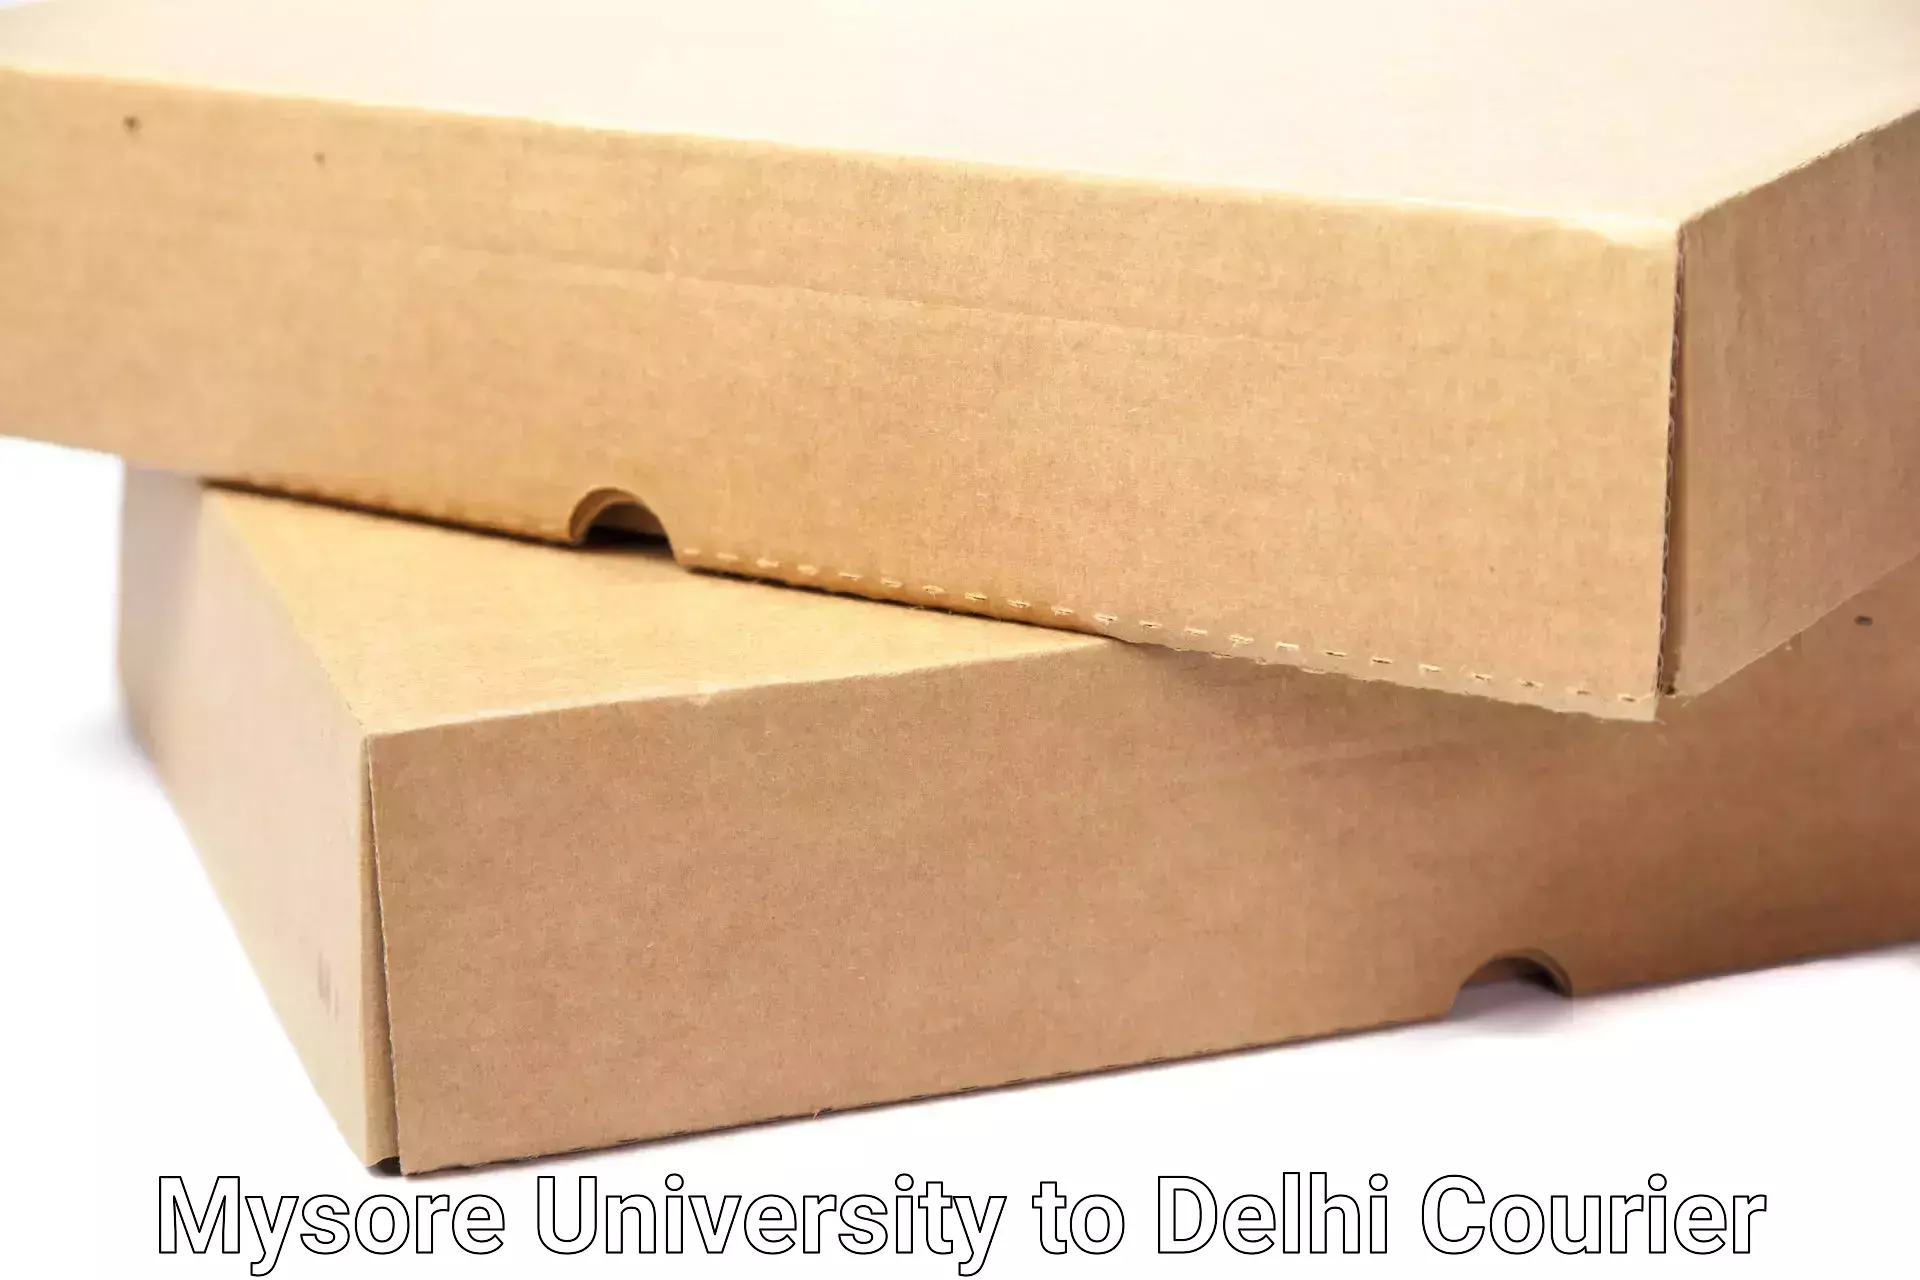 Efficient furniture transport Mysore University to Delhi